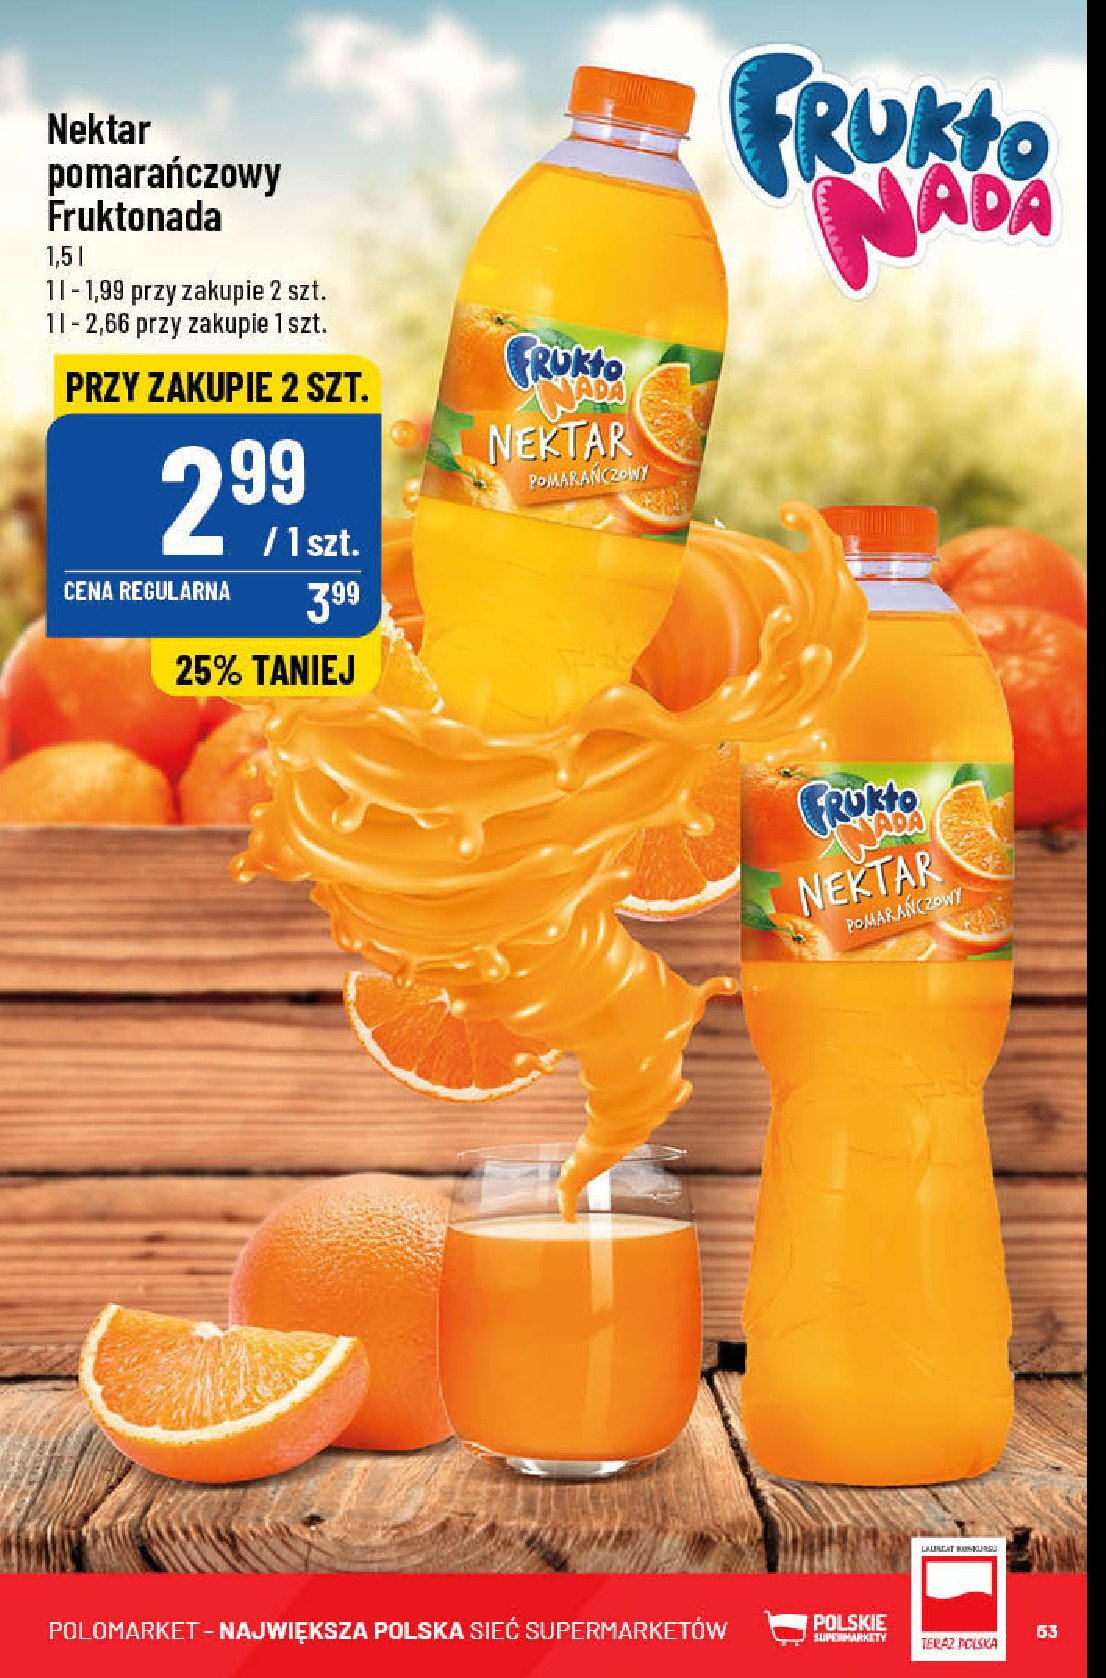 Nektar pomarańczowy Fruktonada promocja